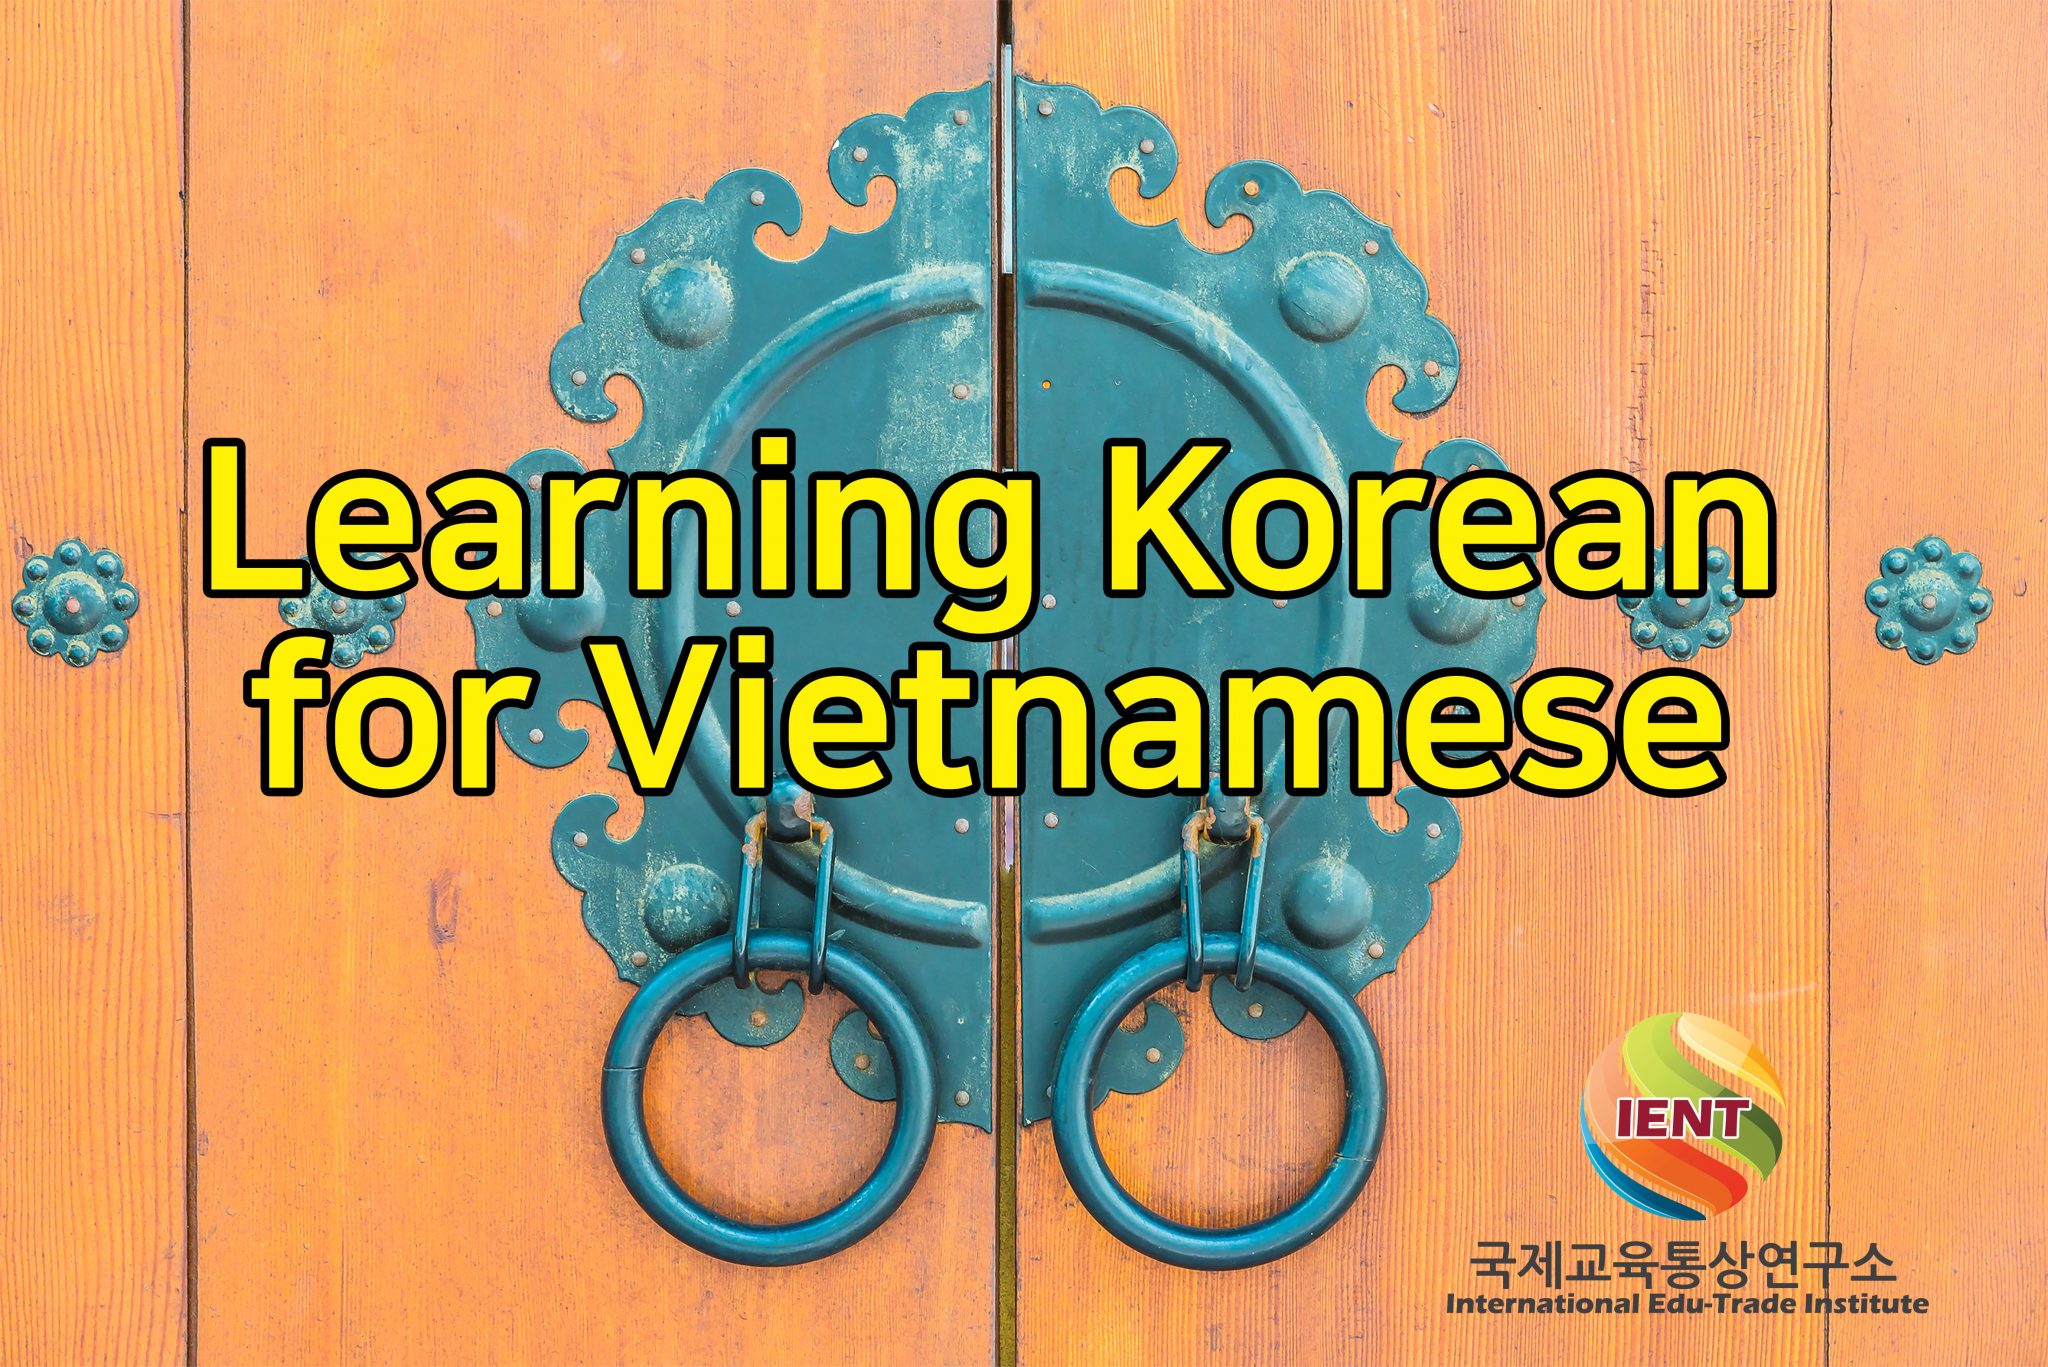 Tiếng Hàn dành cho người Việt(베트남인을 위한 초급 한국어)